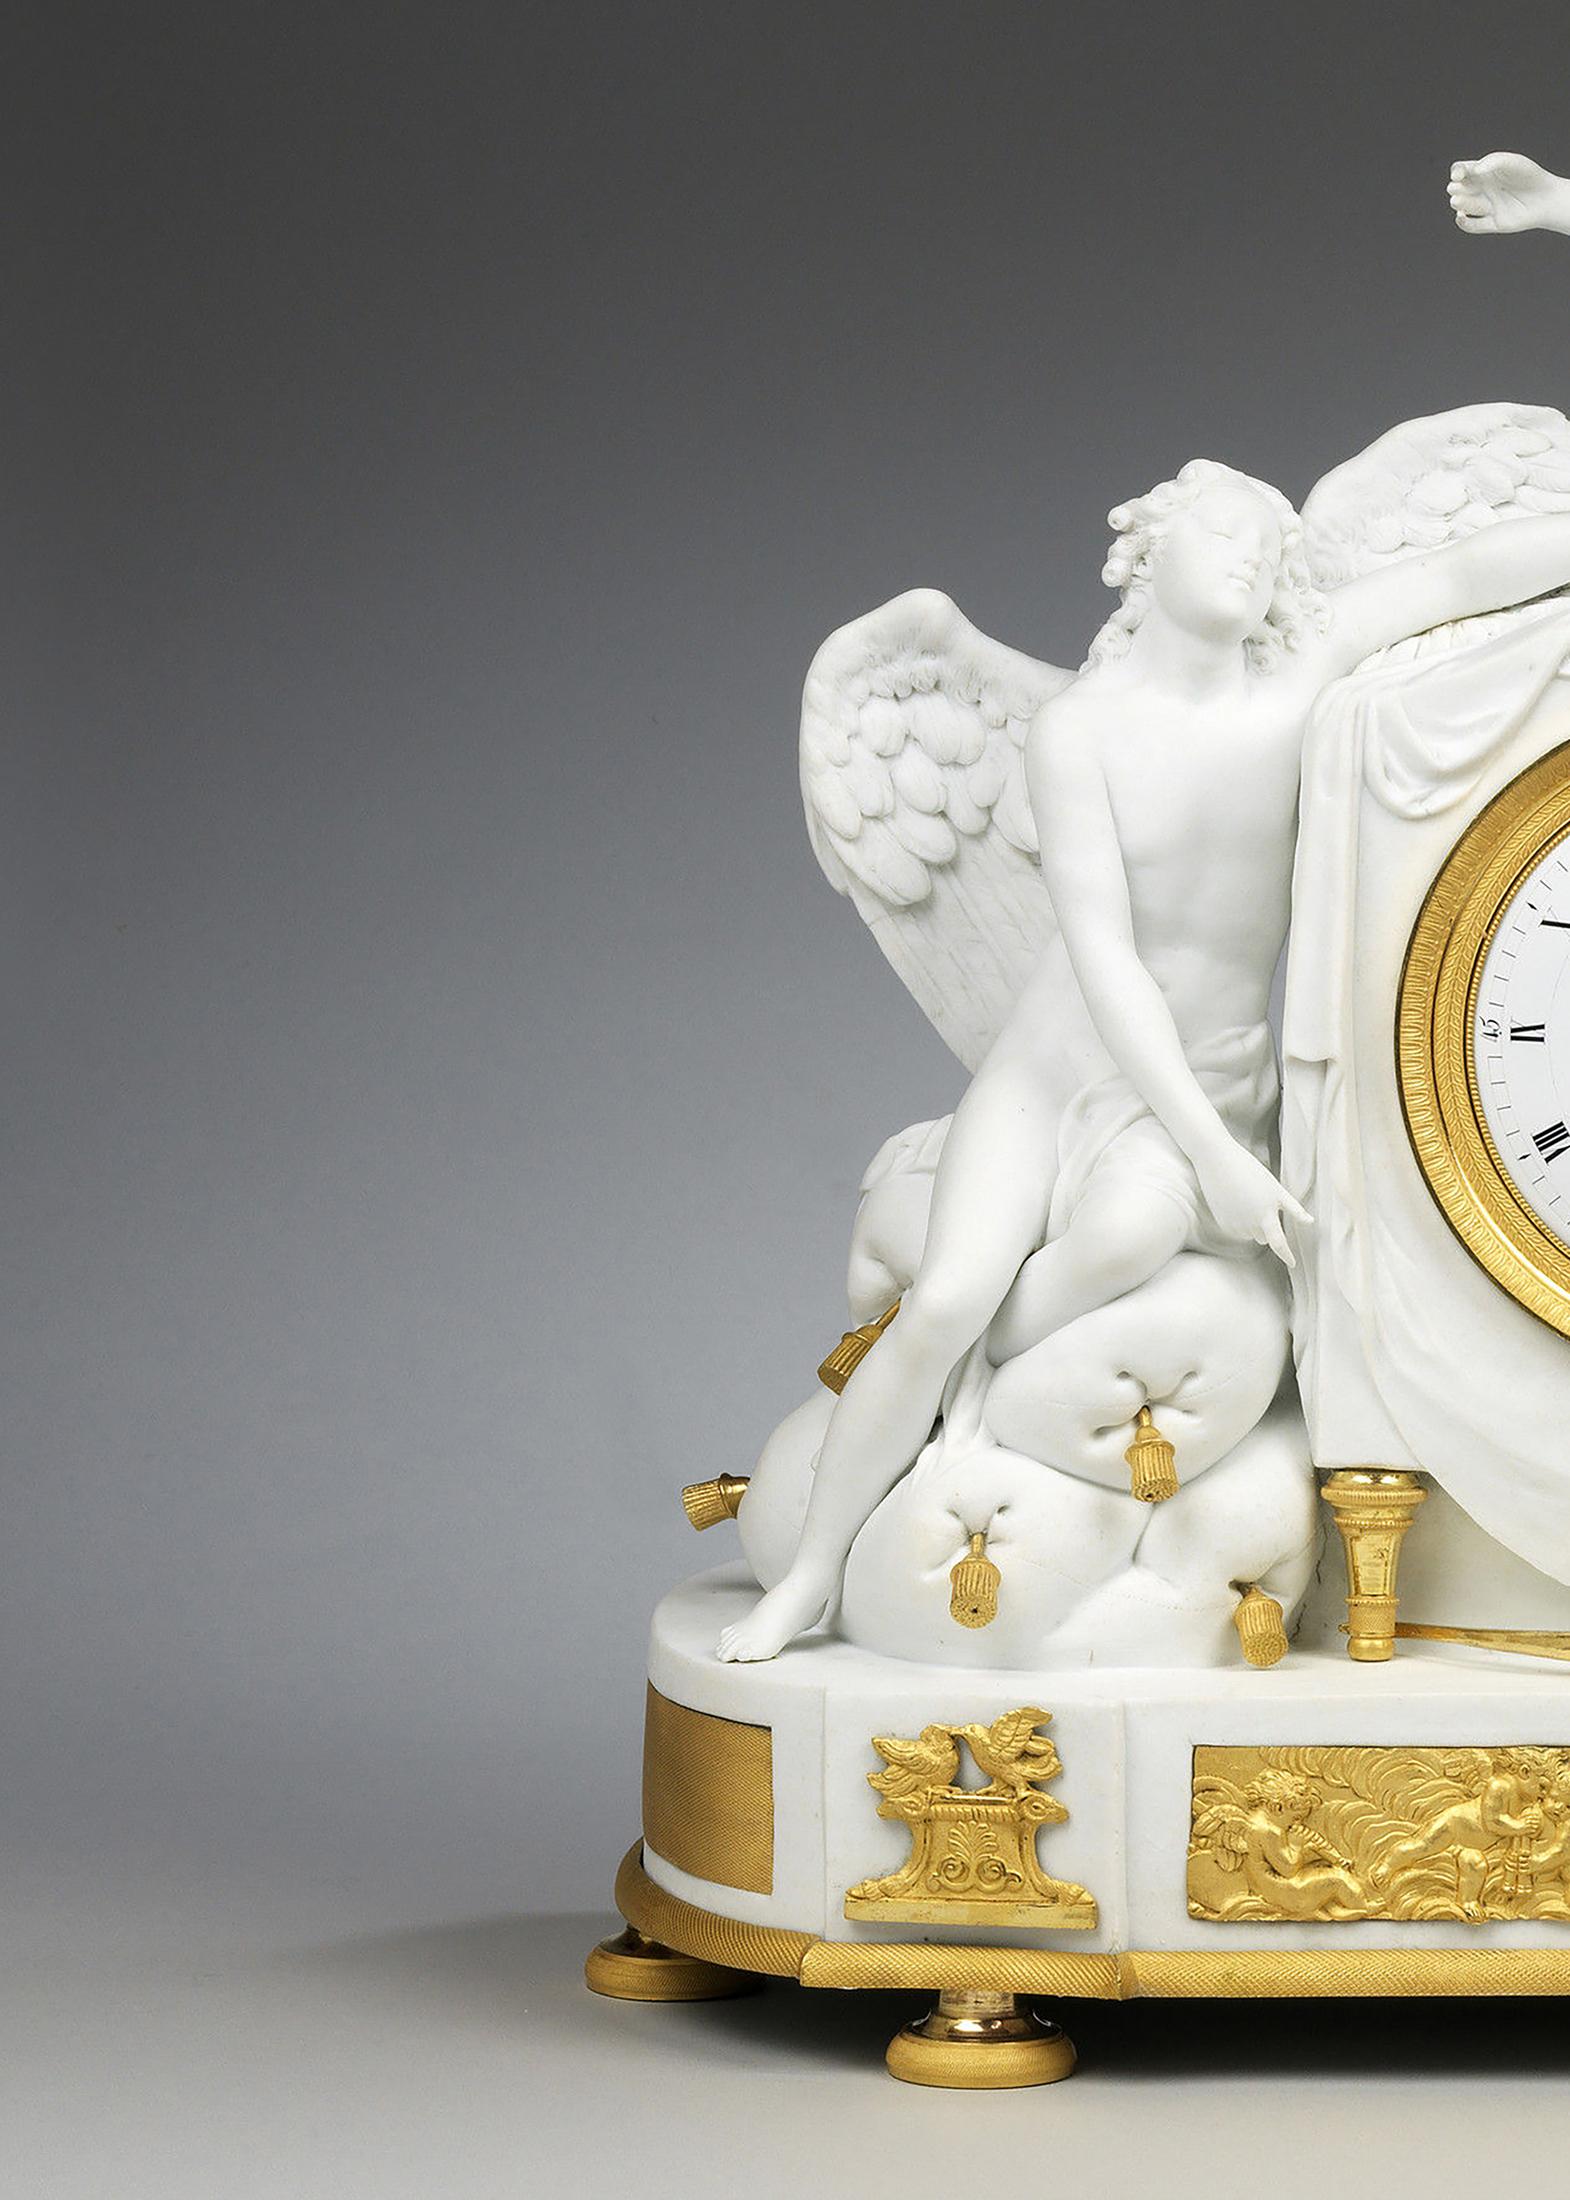 Le cadran de l'horloge émaillé blanc avec chiffres romains, entouré d'un bandeau gravé en bronze doré inséré dans un boîtier en porcelaine biscuit, sur deux pieds tournés en bronze doré. Sur le côté droit, Vénus veille sur son fils Cupidon endormi.